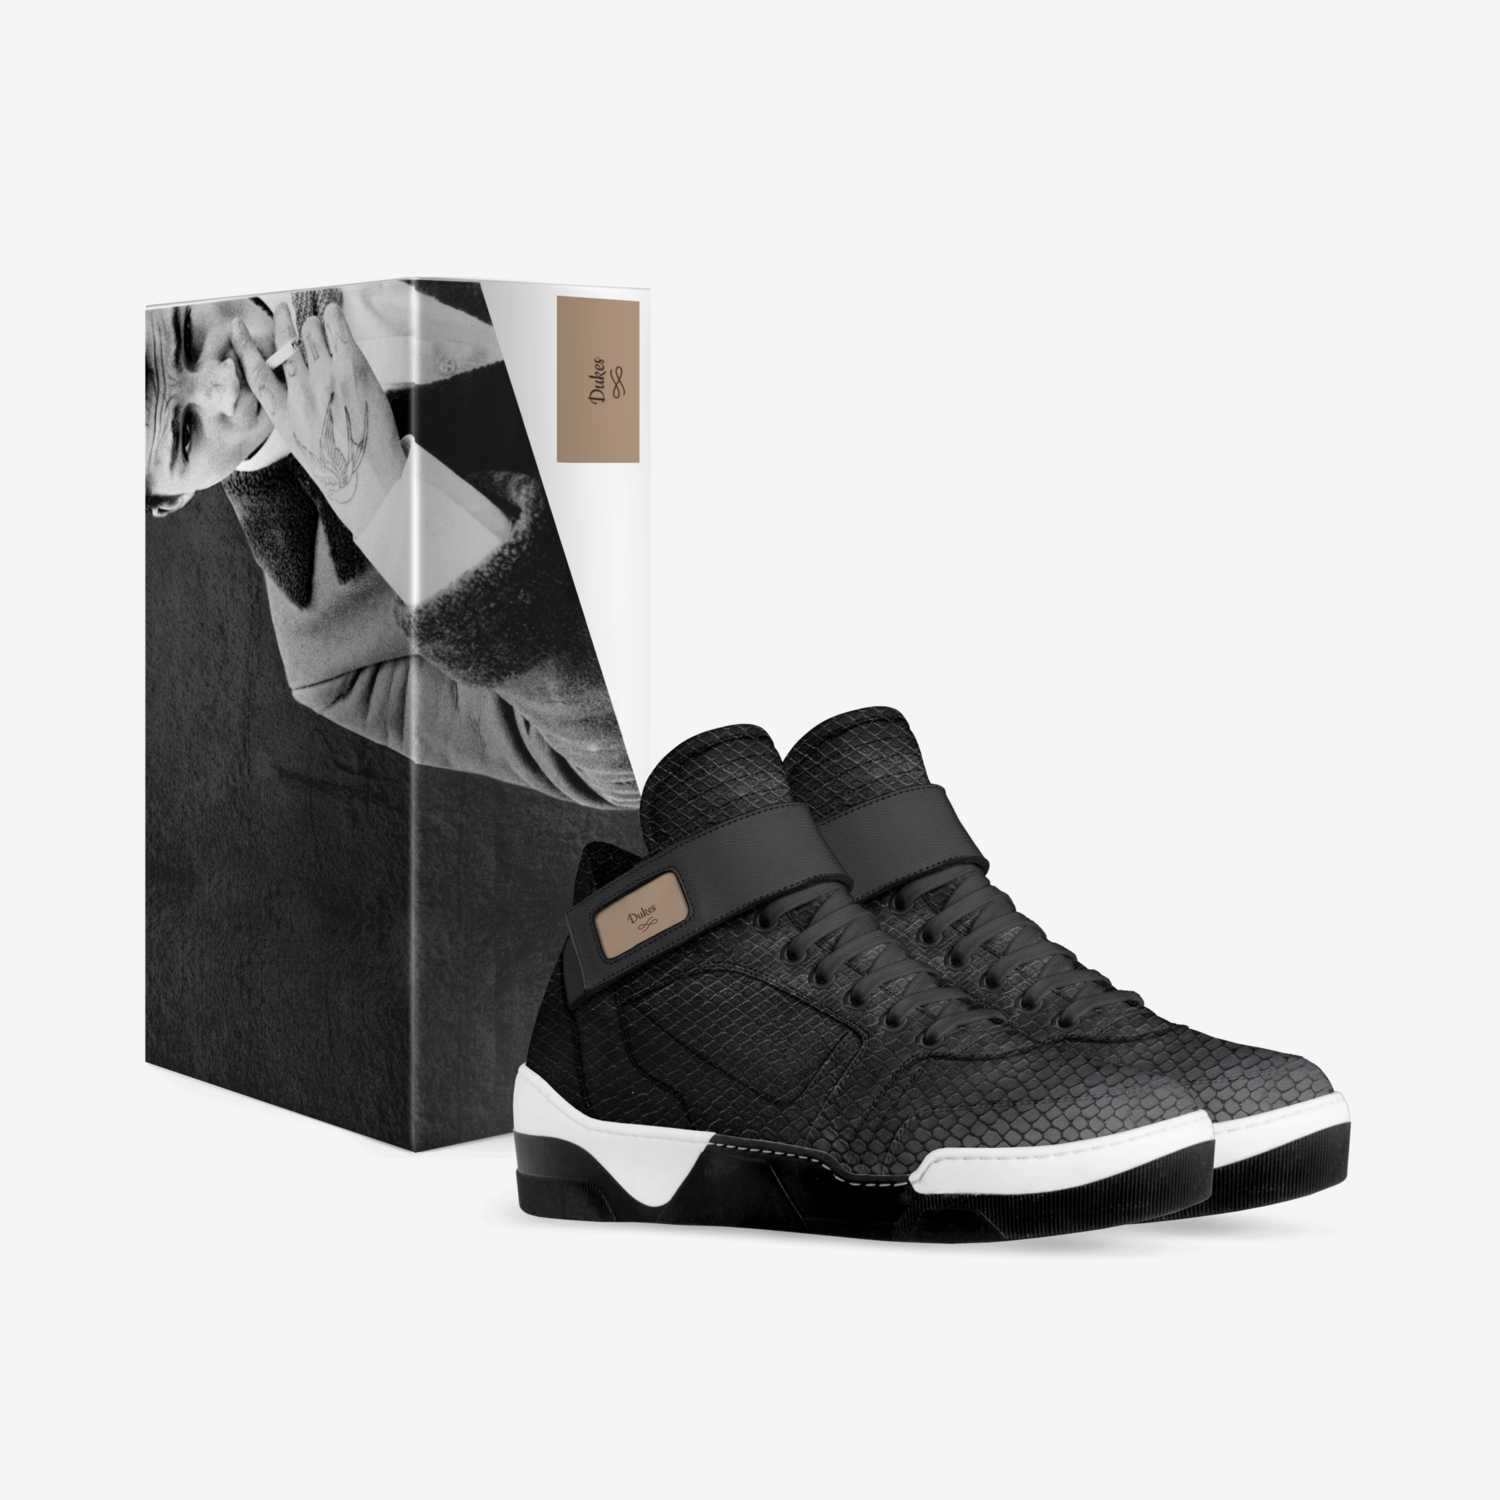 Duke Men's   custom made in Italy shoes by Arnett Hankerson | Box view